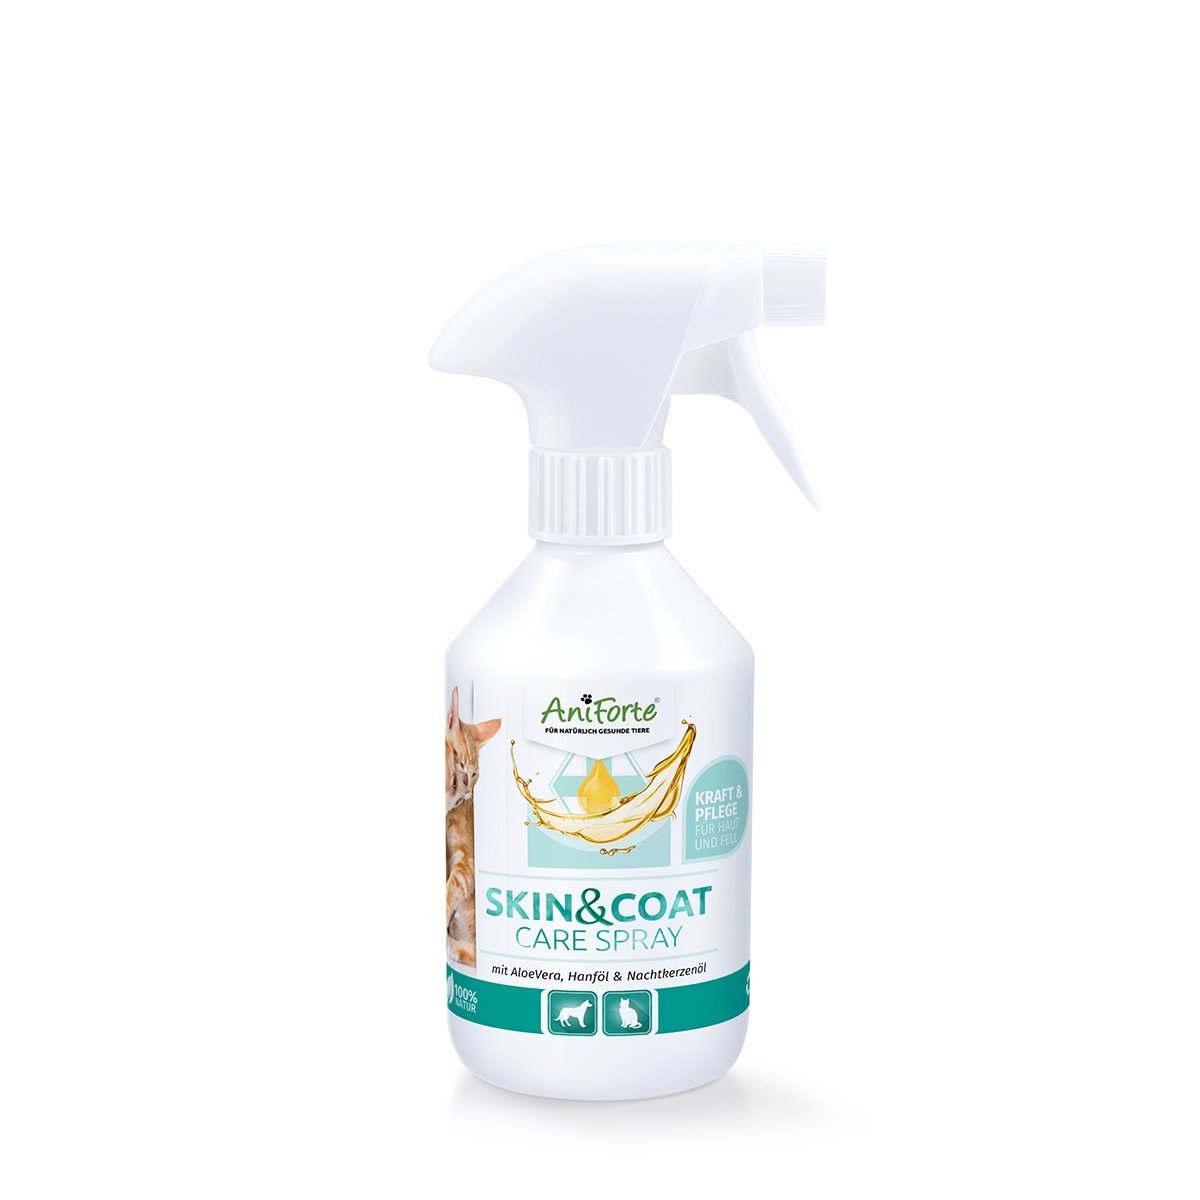 Aniforte - Skin & Coat Care Spray 250 ml